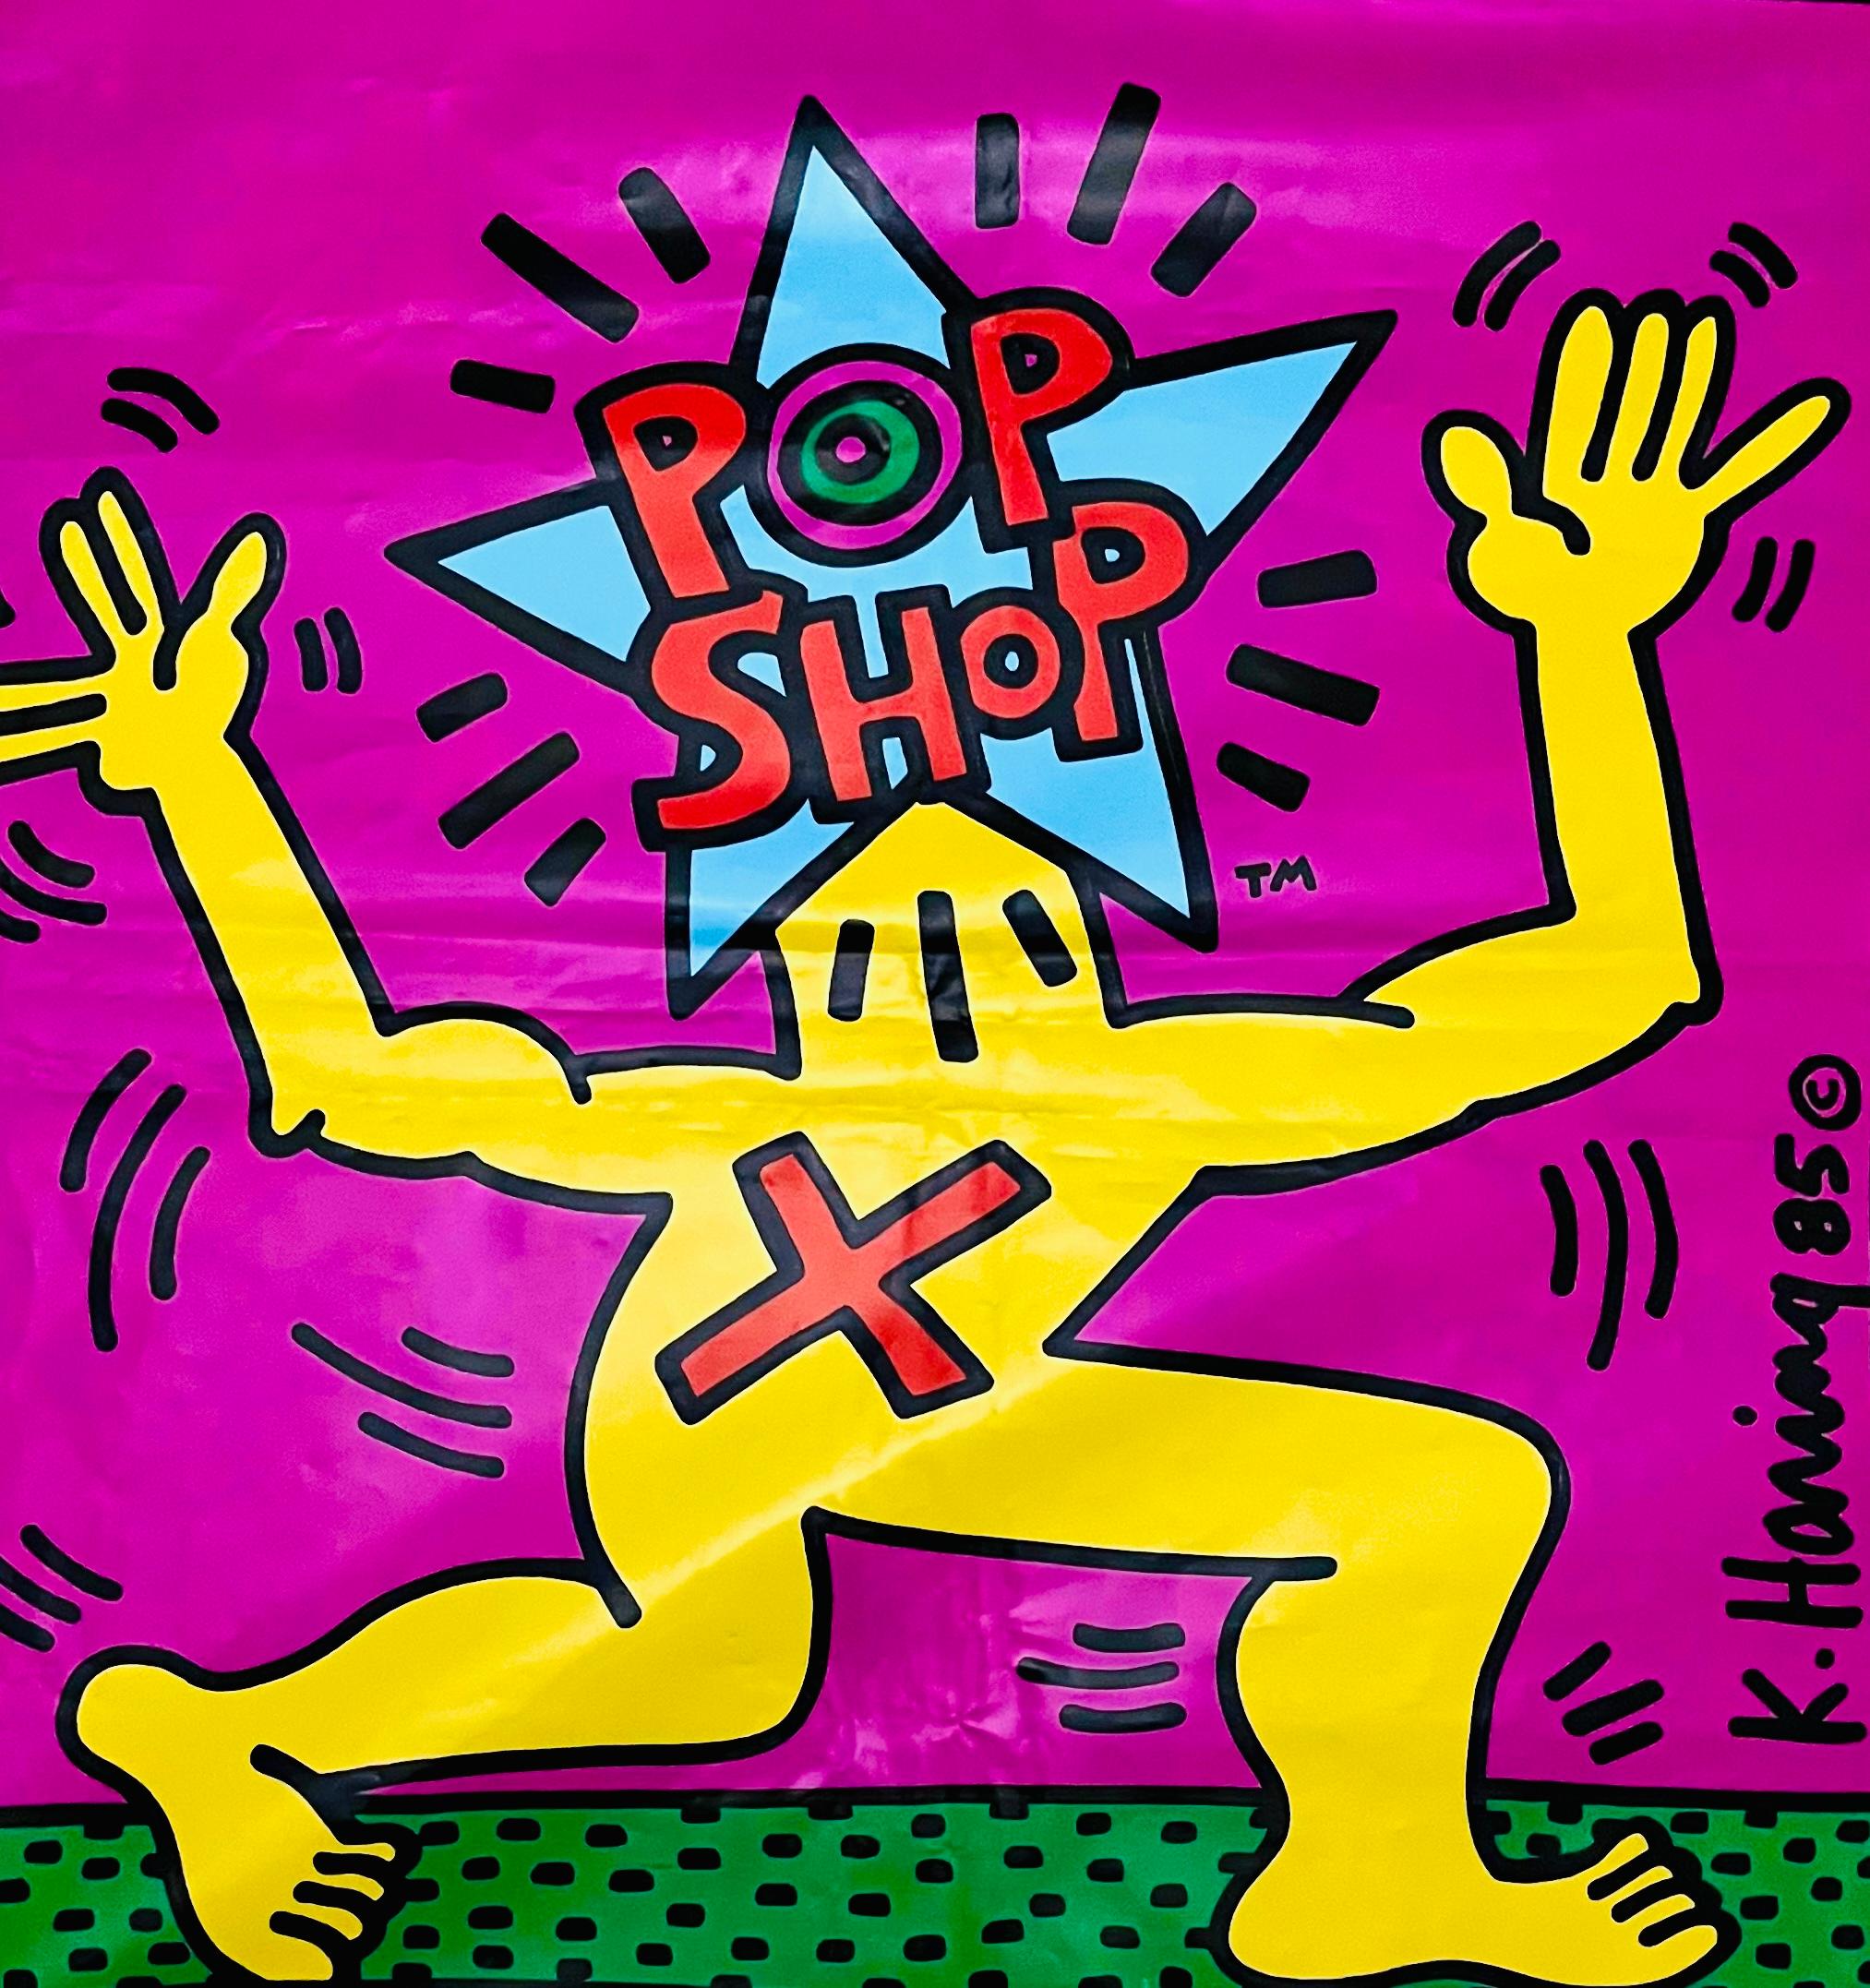 Keith Haring Pop Shop, 1986 :
Vintage original des années 1980, sac Keith Haring Pop Shop conçu et illustré par l'artiste. La signature imprimée de Keith Haring et les logos originaux de la boutique Haring Pop, ainsi que les couleurs vives et